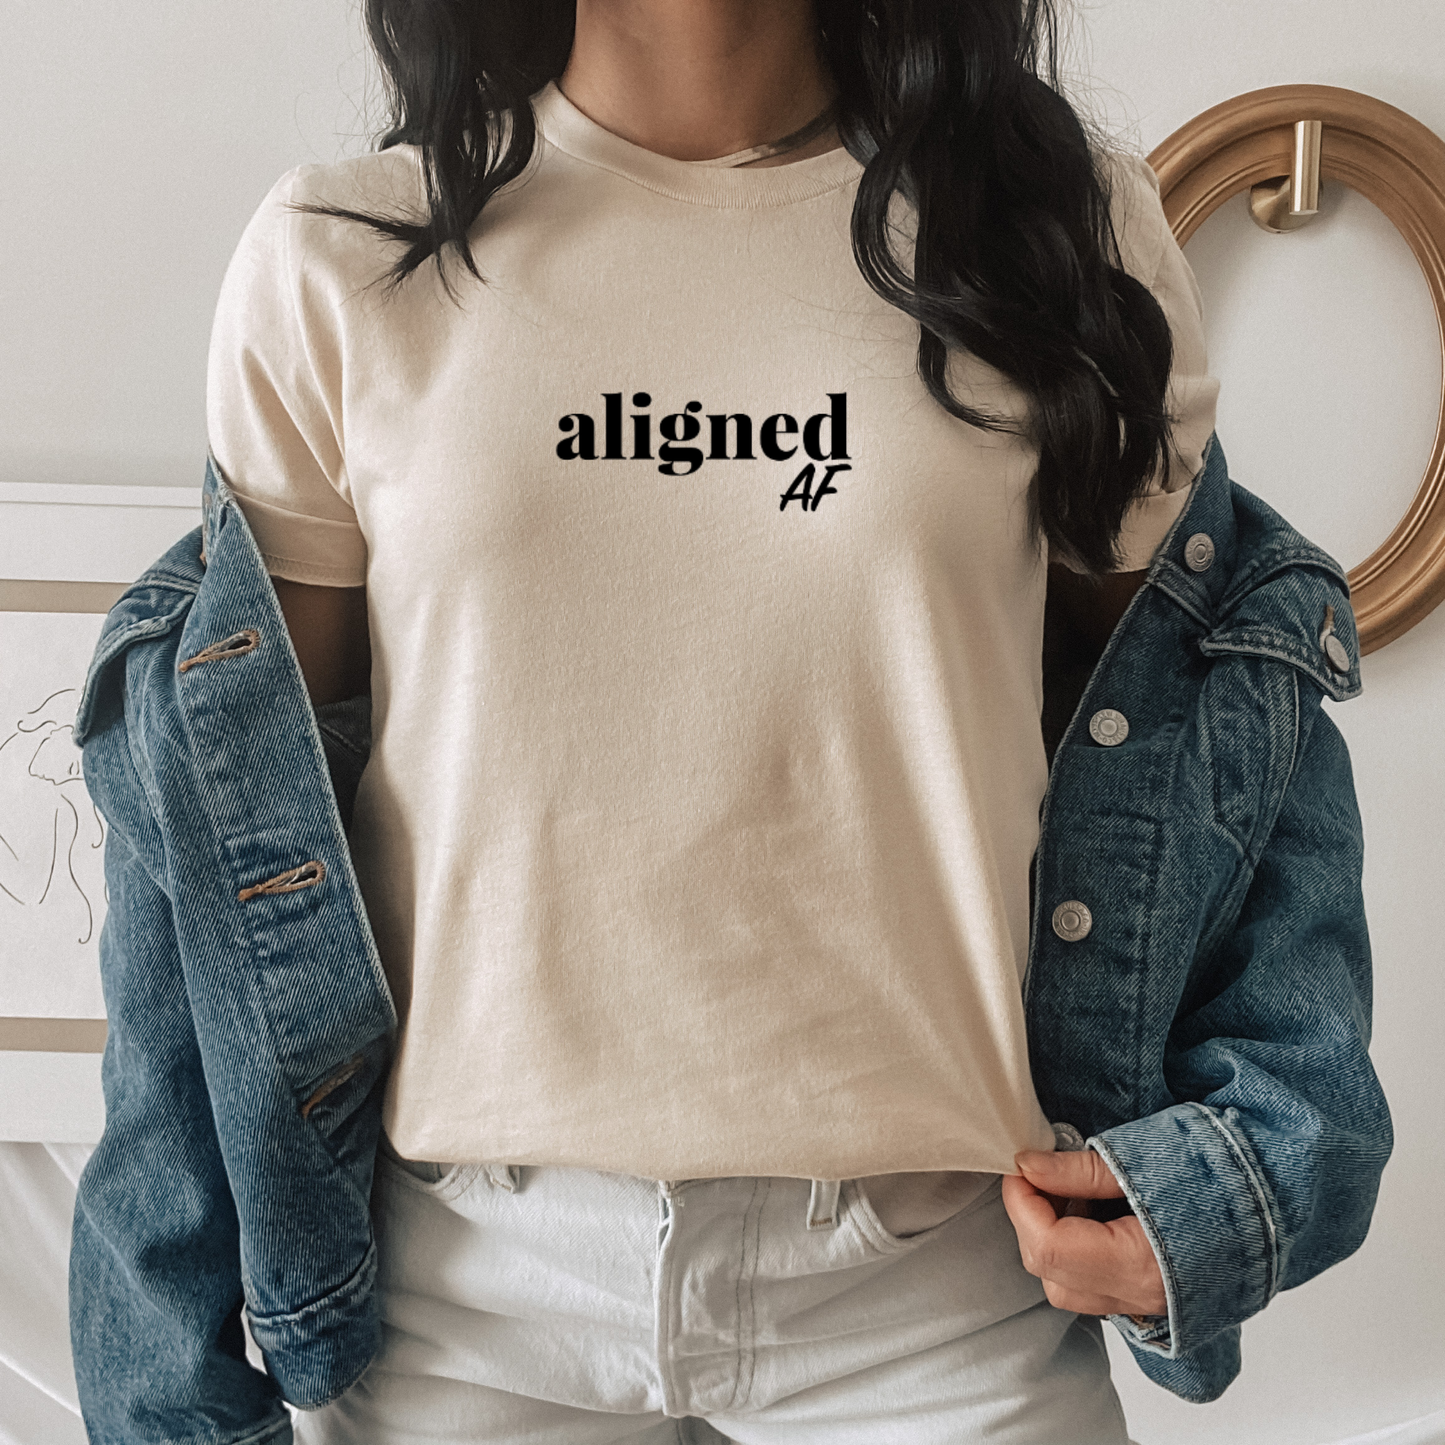 Aligned AF T-Shirt & Sweatshirt